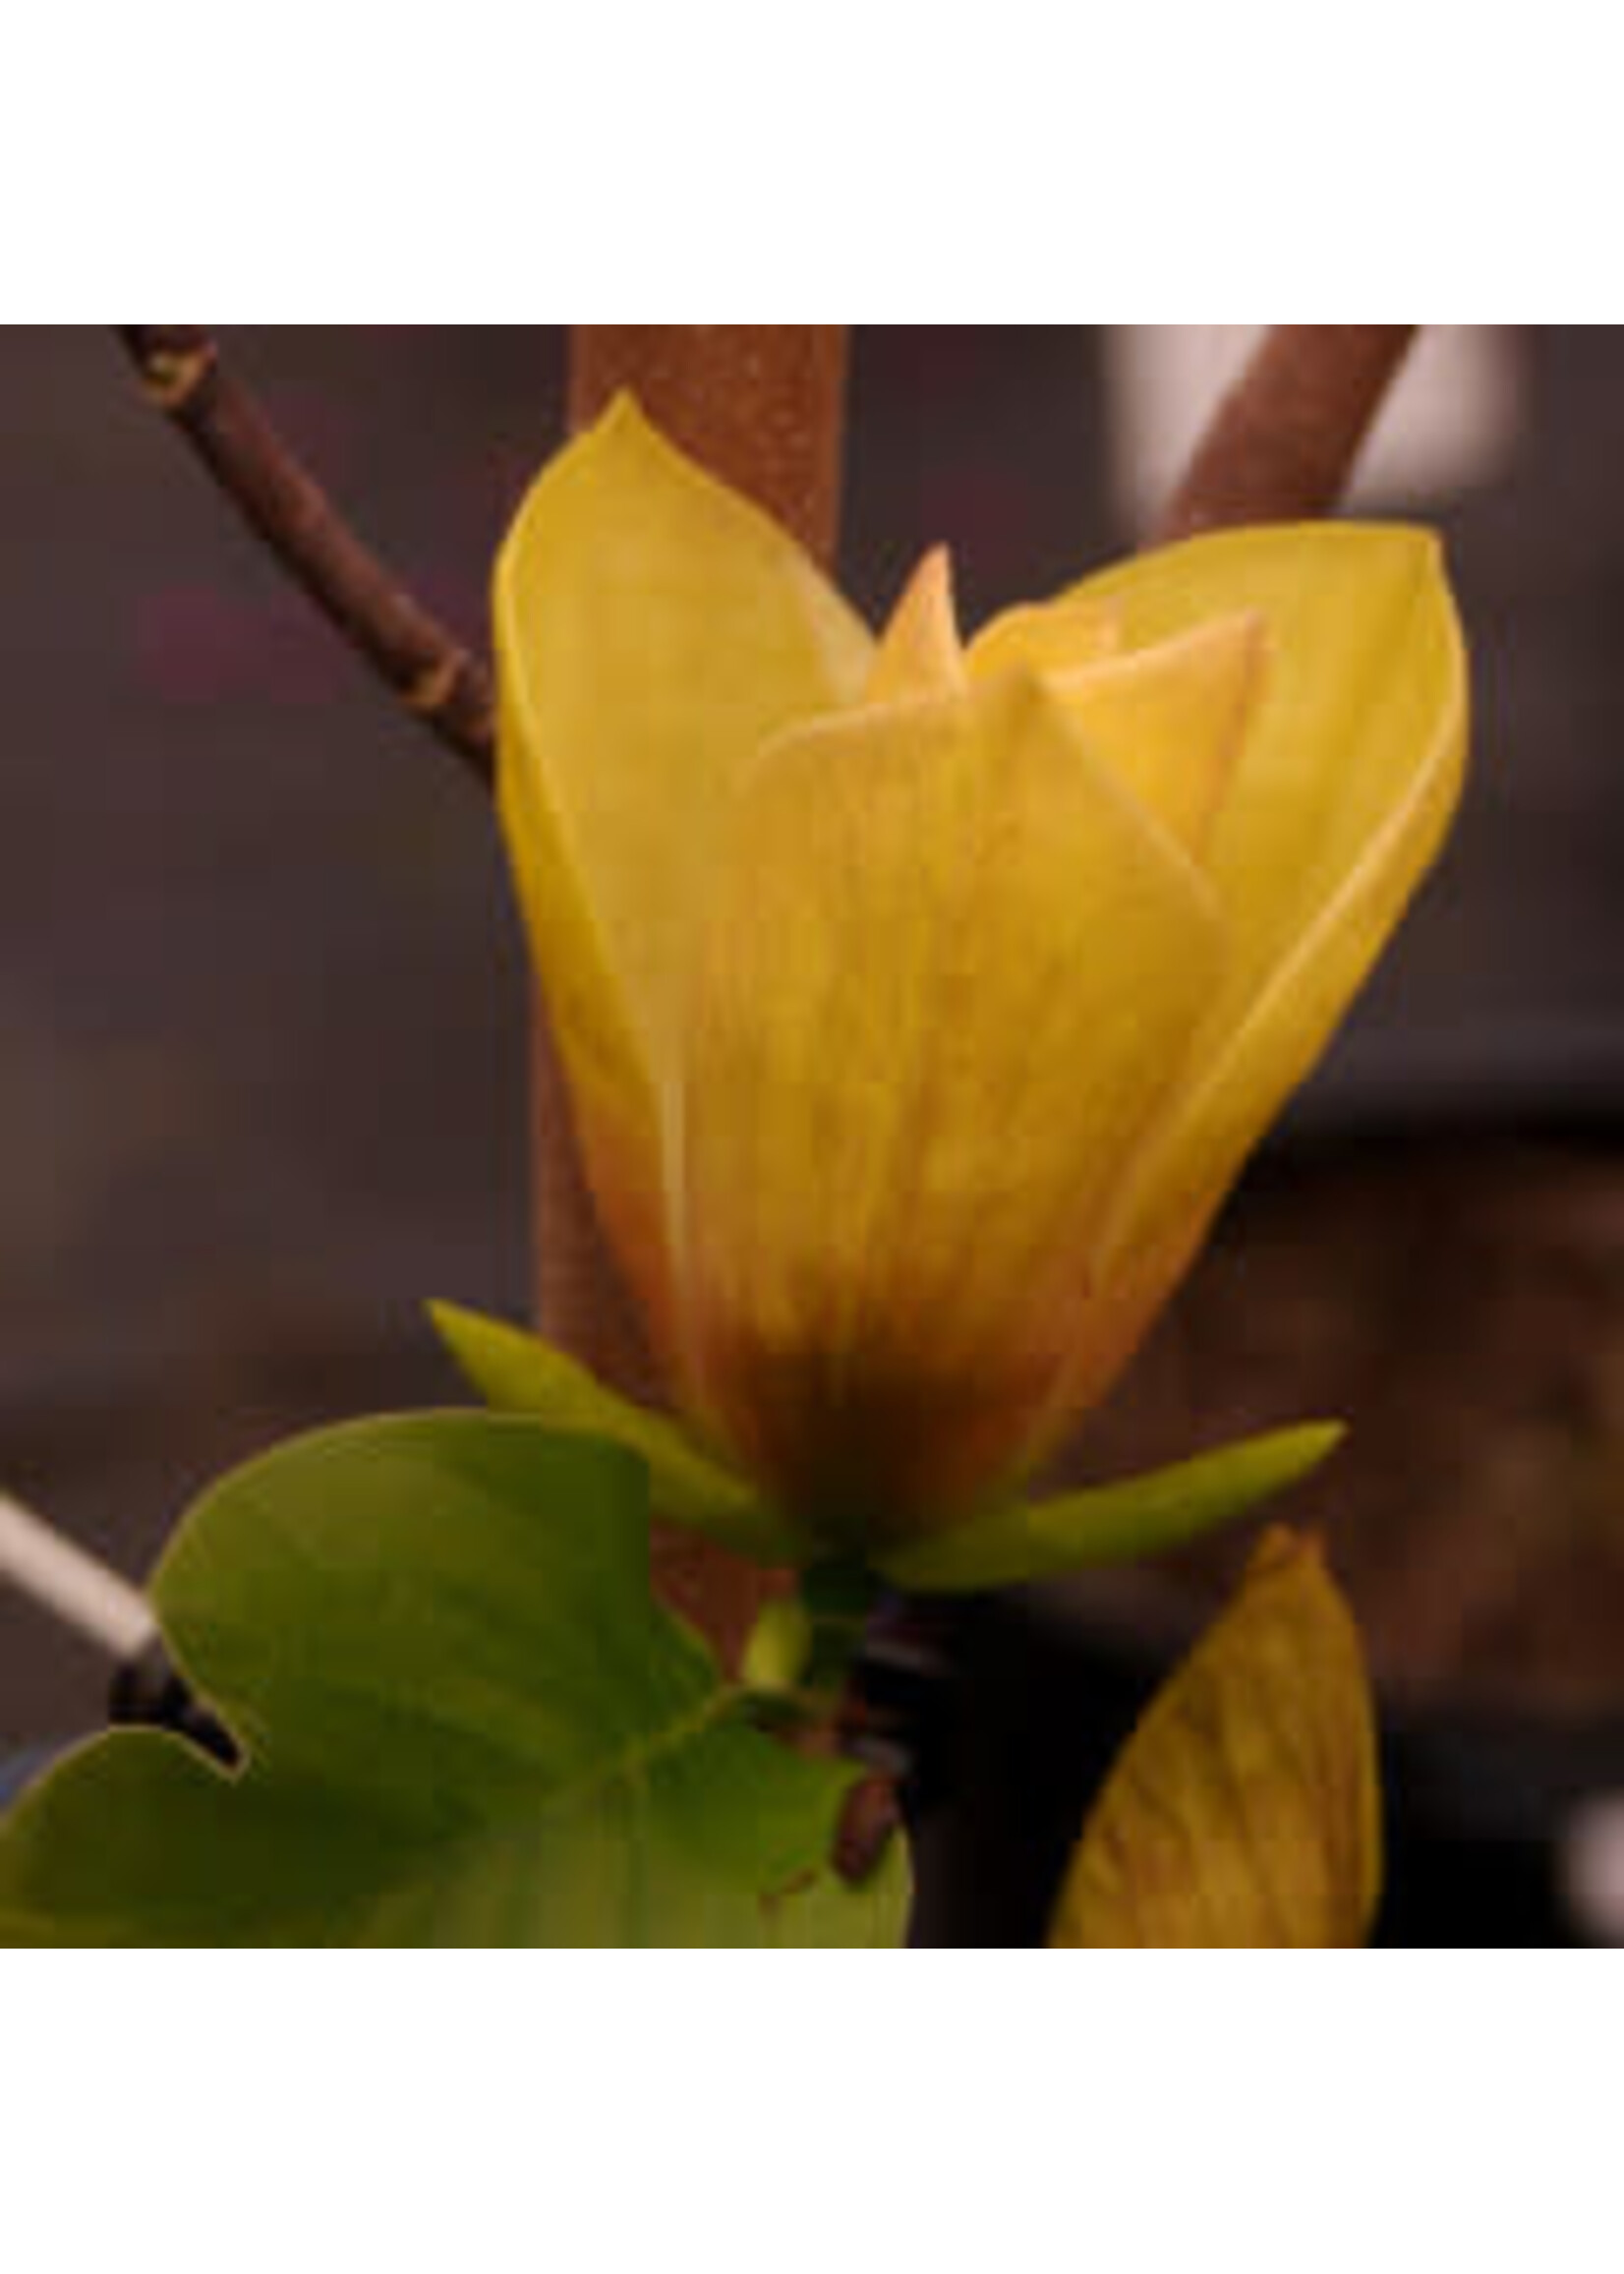 Spring Bloom Magnolia x brooklyn. Judy Zuk- Hybrid magnolia, #5